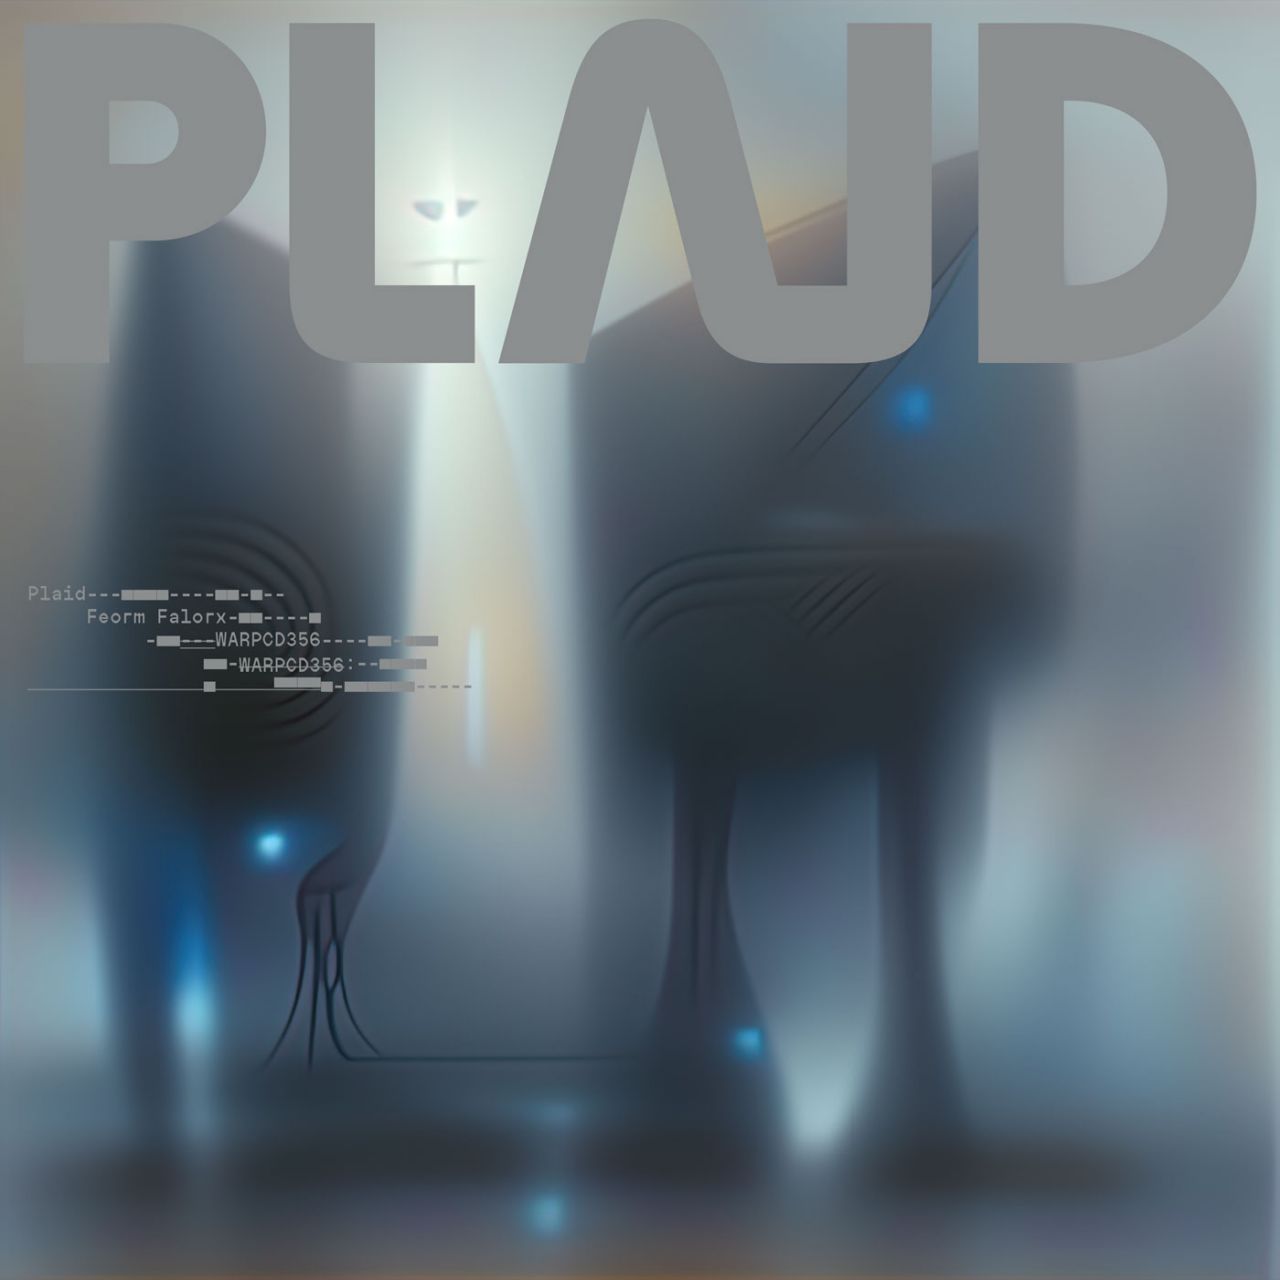 Plaid - Feorm Falorx - LP